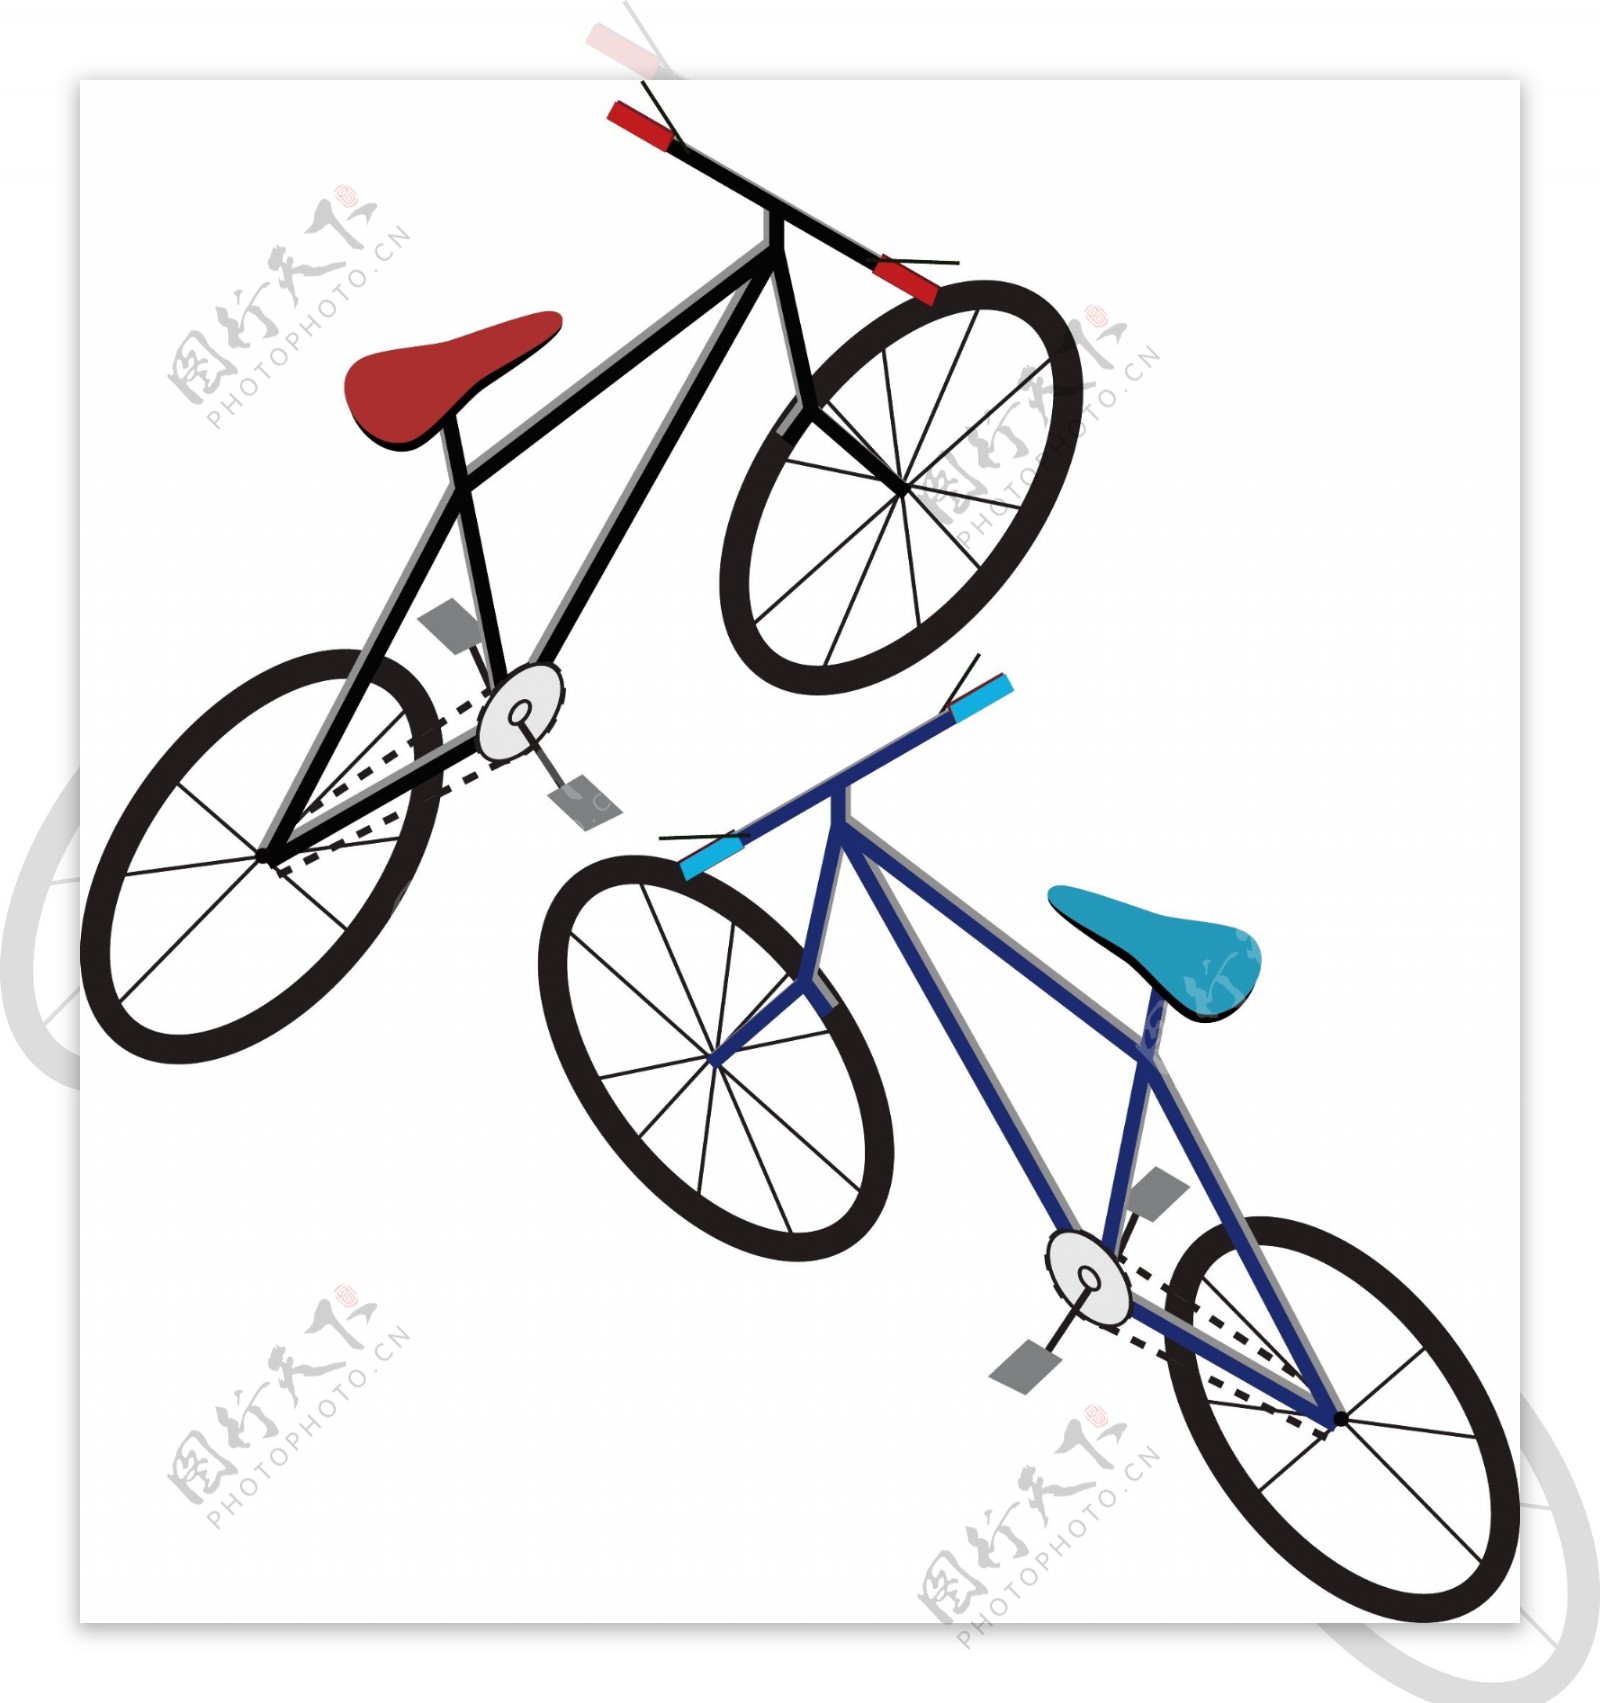 2.5D简单自行车模型红蓝素材